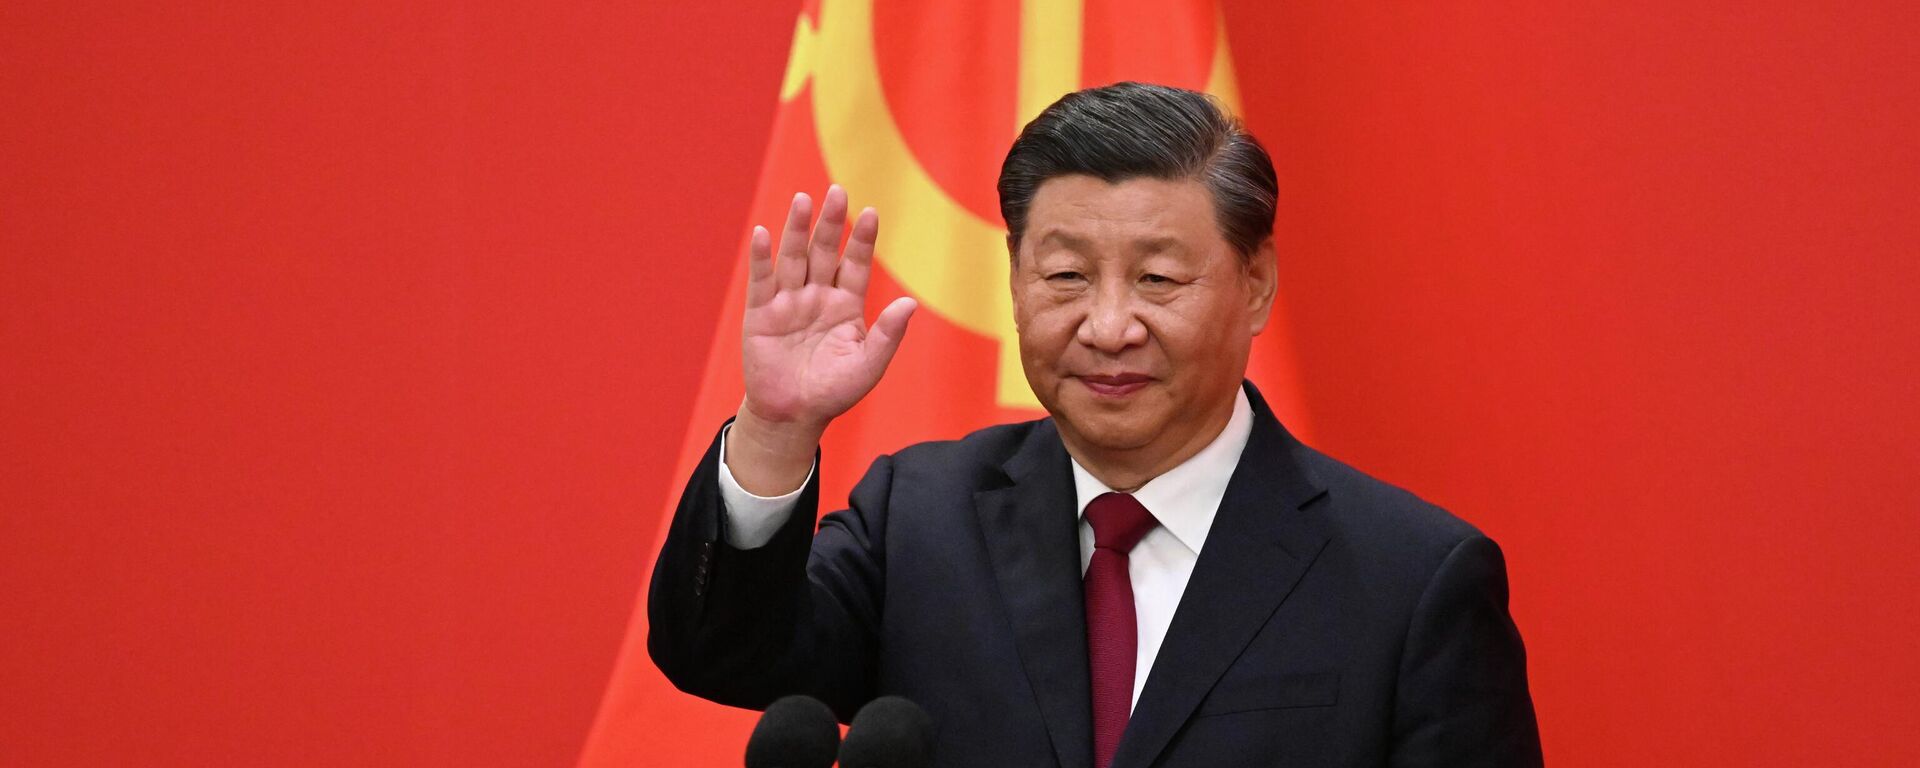 Xi Jinping, el mandatario chino, en el XX Congreso Nacional del Partido Comunista de China en el Gran Salón del Pueblo - Sputnik Mundo, 1920, 23.10.2022